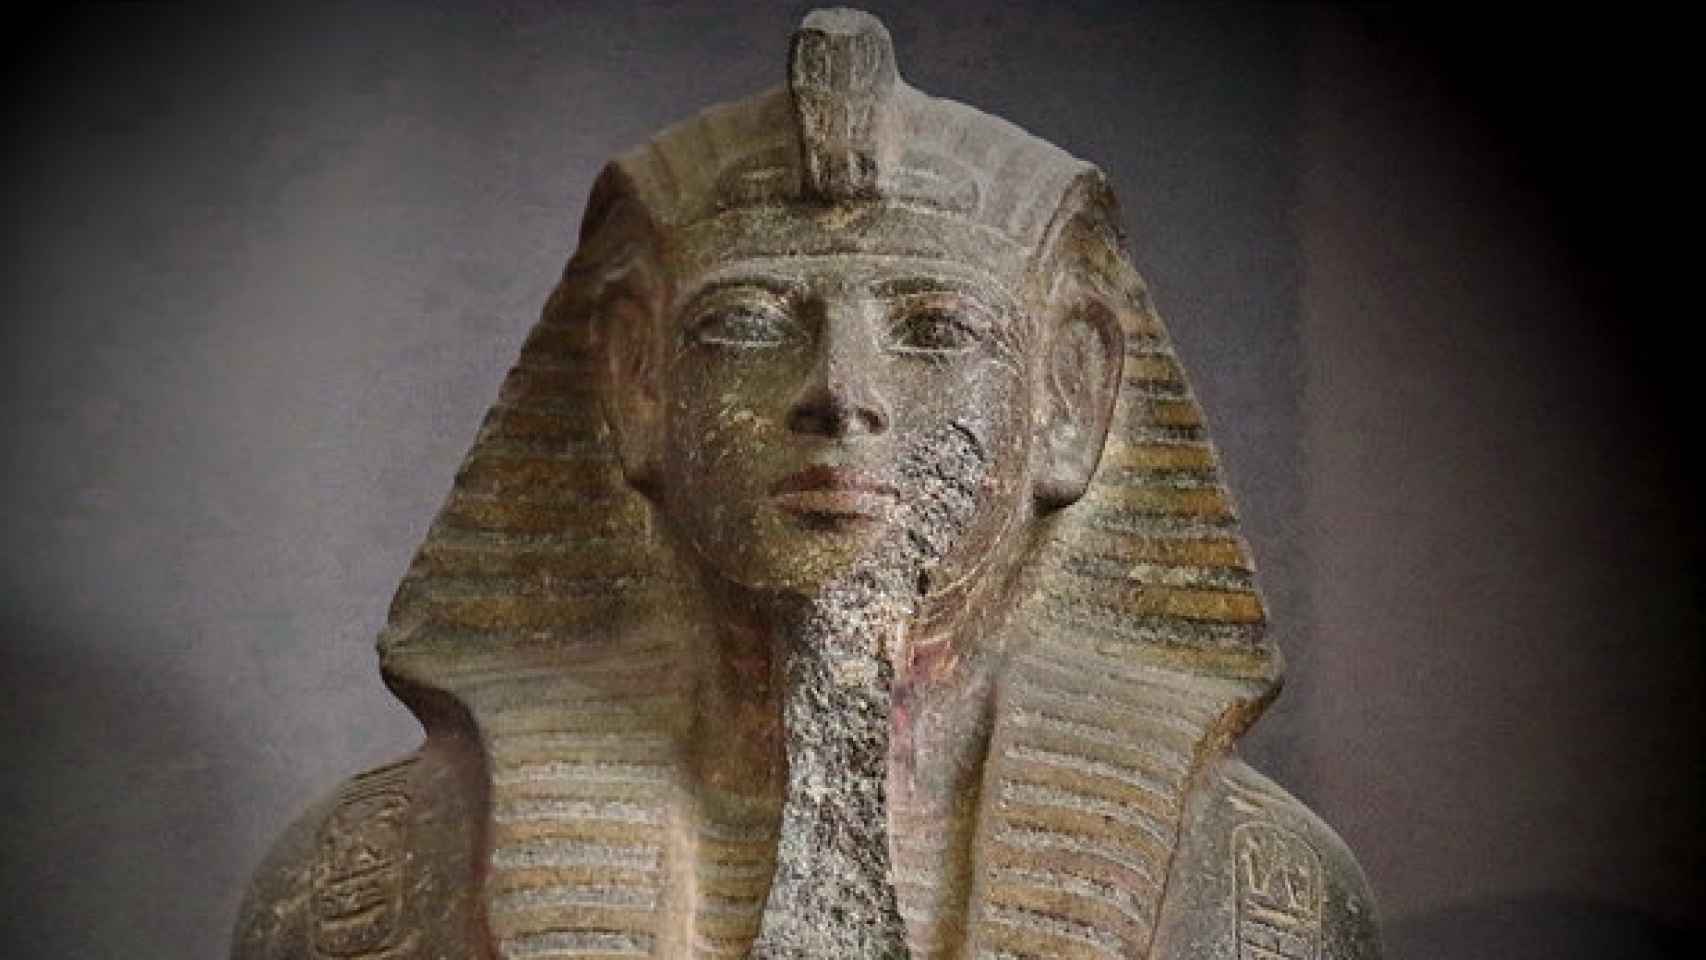  penes cortados: el extraño trofeo del faraón Merneptah